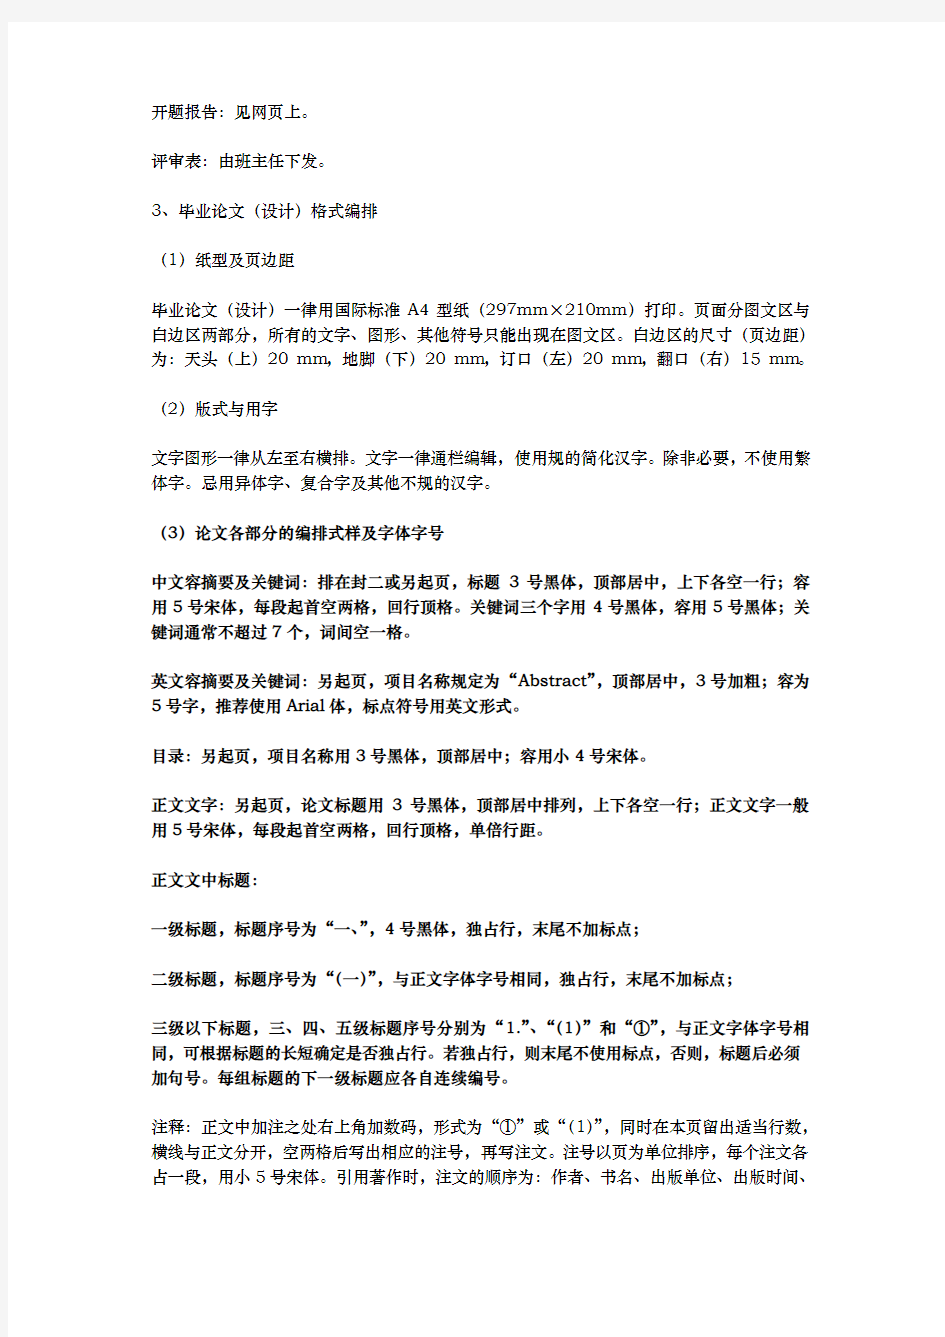 (新)湖南广播电视大学毕业论文(设计)结构格式标准